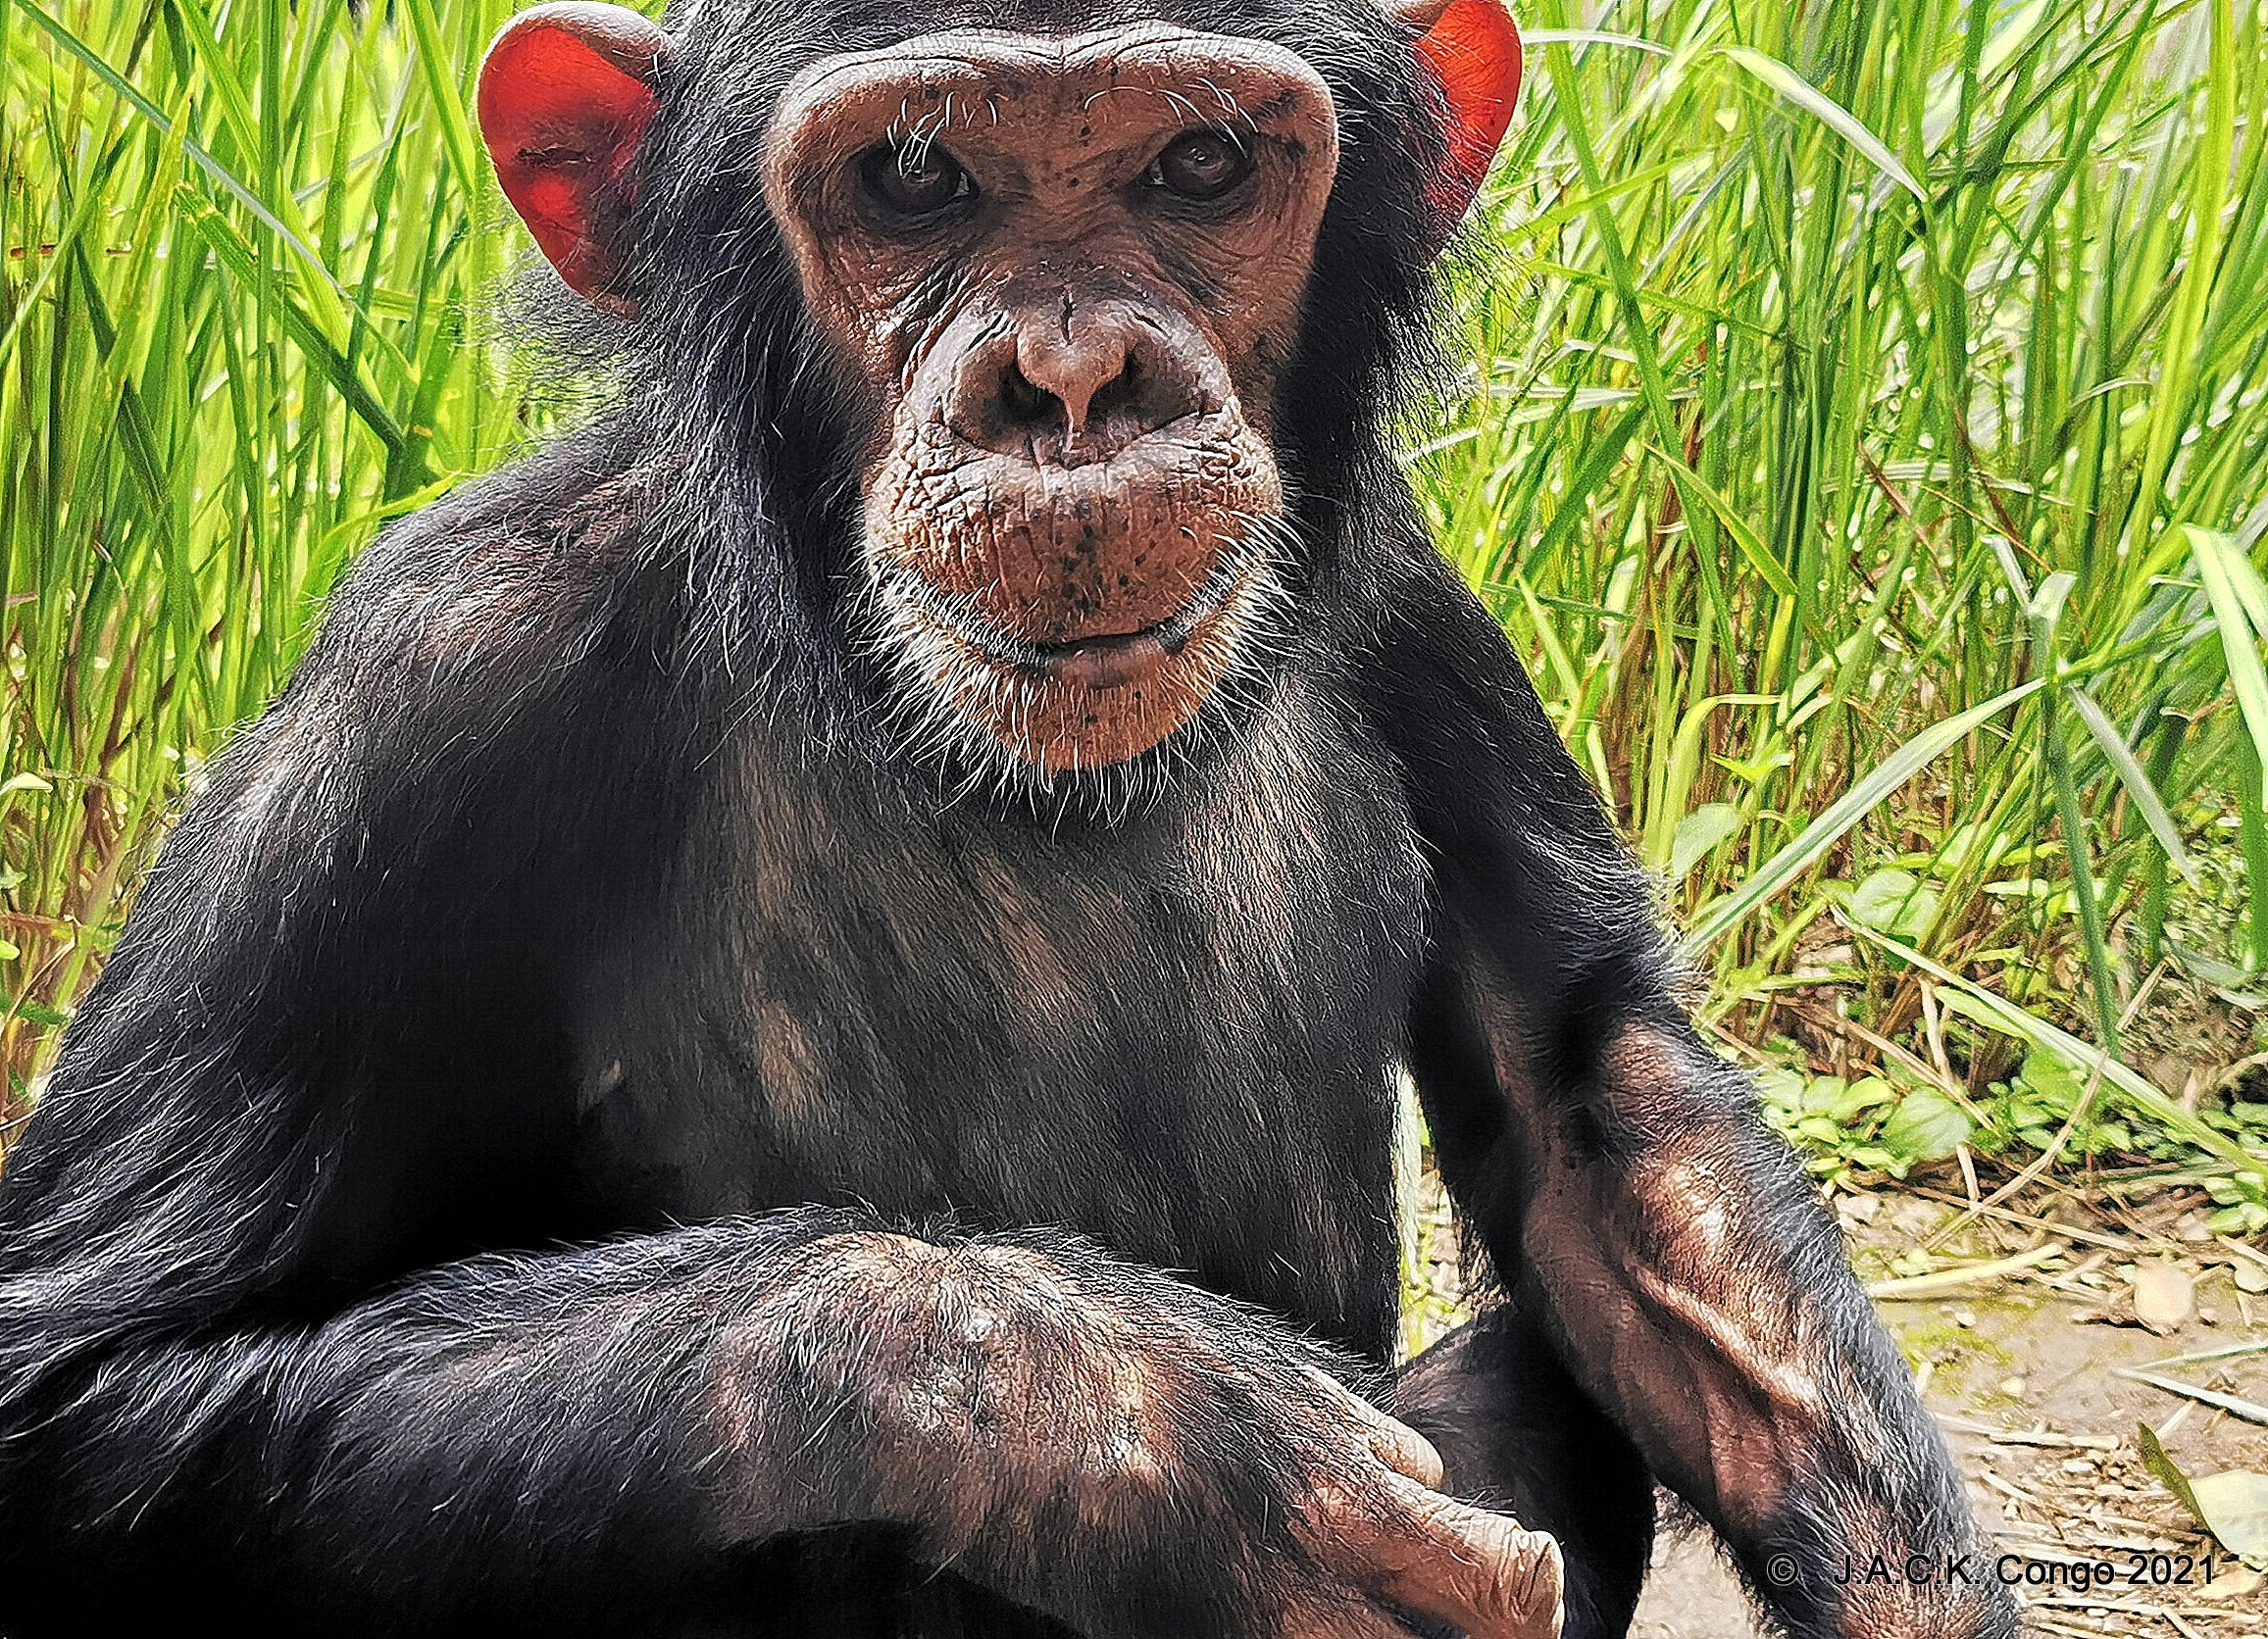 Zumba had forgotten she was a chimpanzee